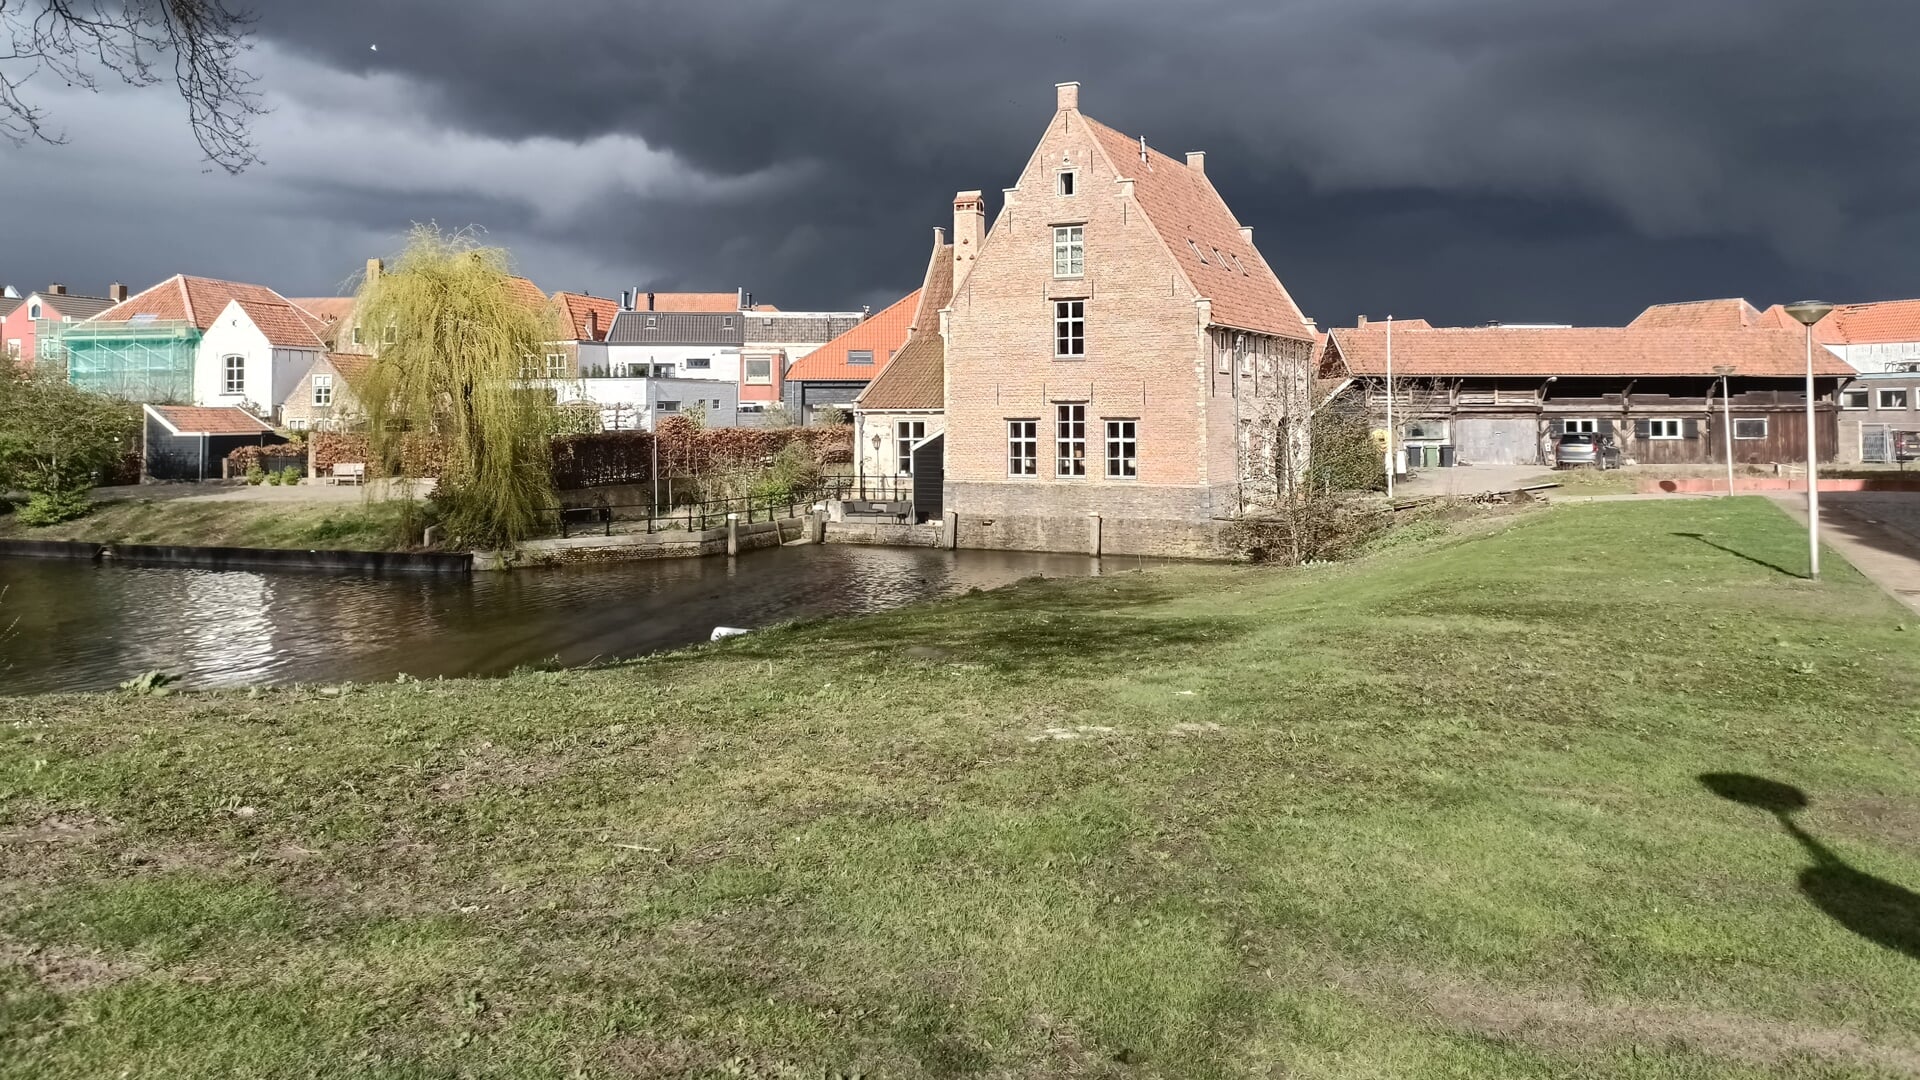 Donkere wolken pakken zich samen boven Bergen op Zoom. De oude watermolen aan het Molenpad en de Vissershaven baadt echter nog volop in de zon.